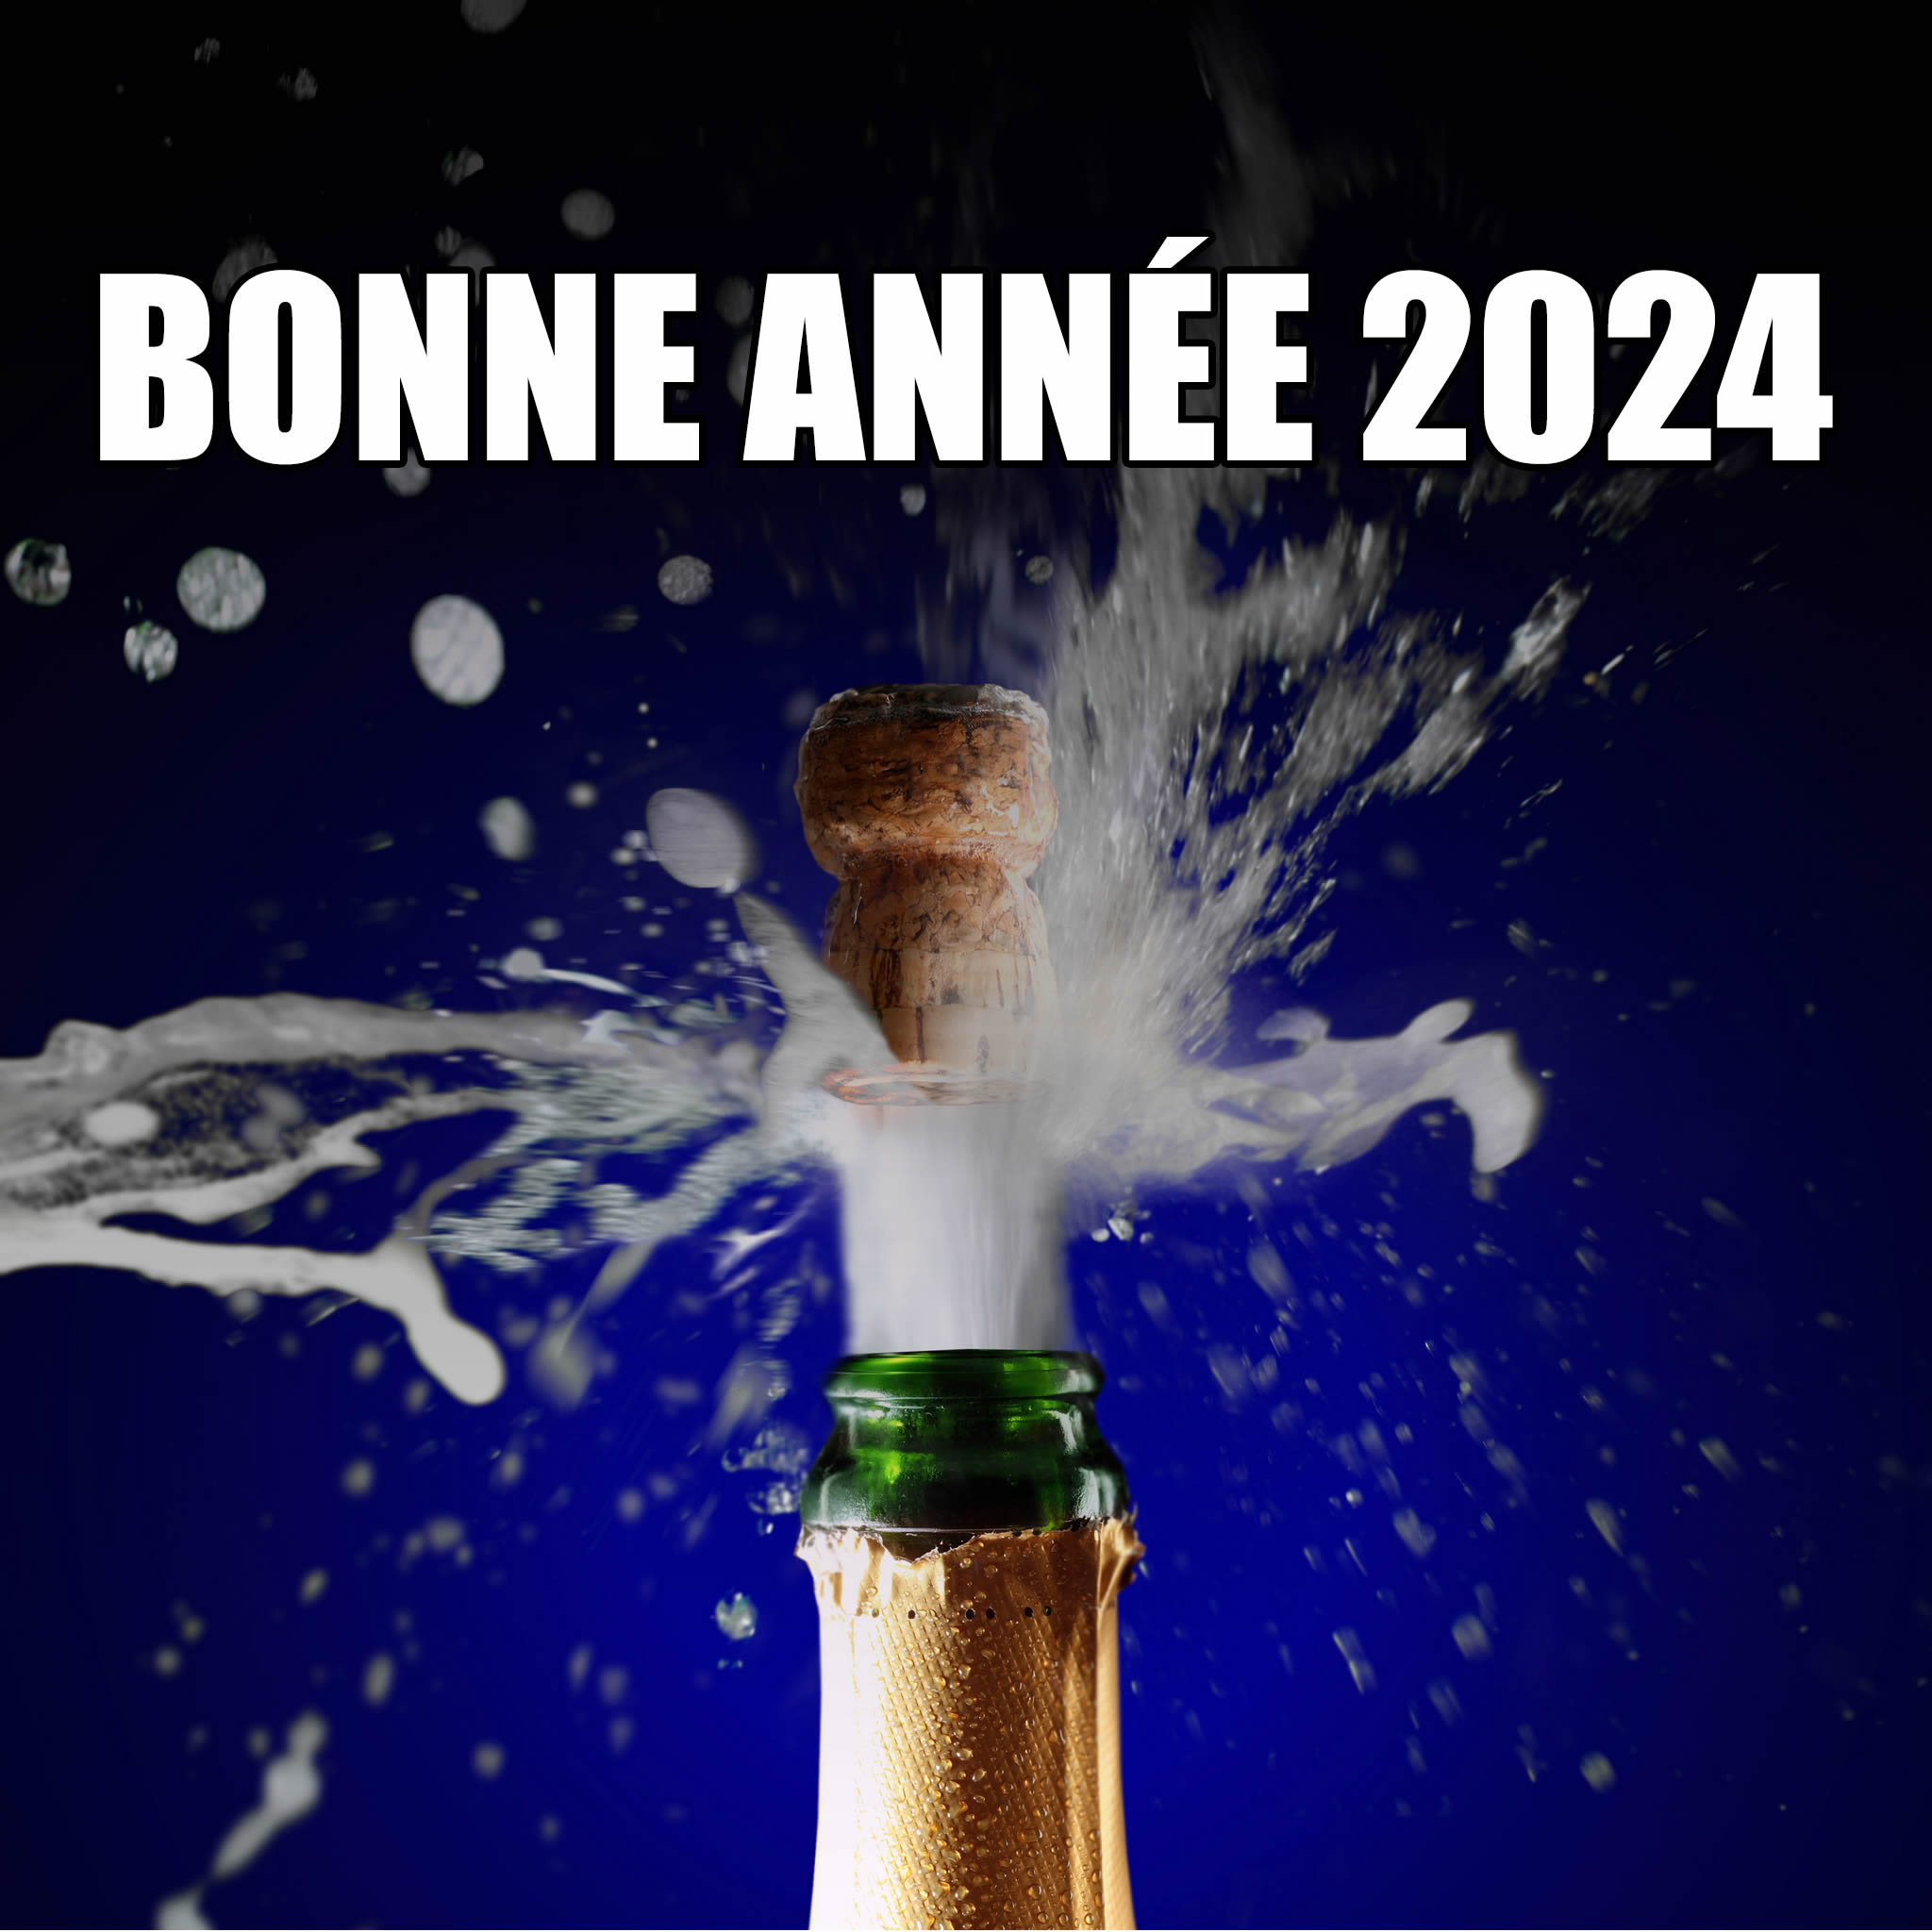 Image de vœux avec un champagne
 débouché pour 2024